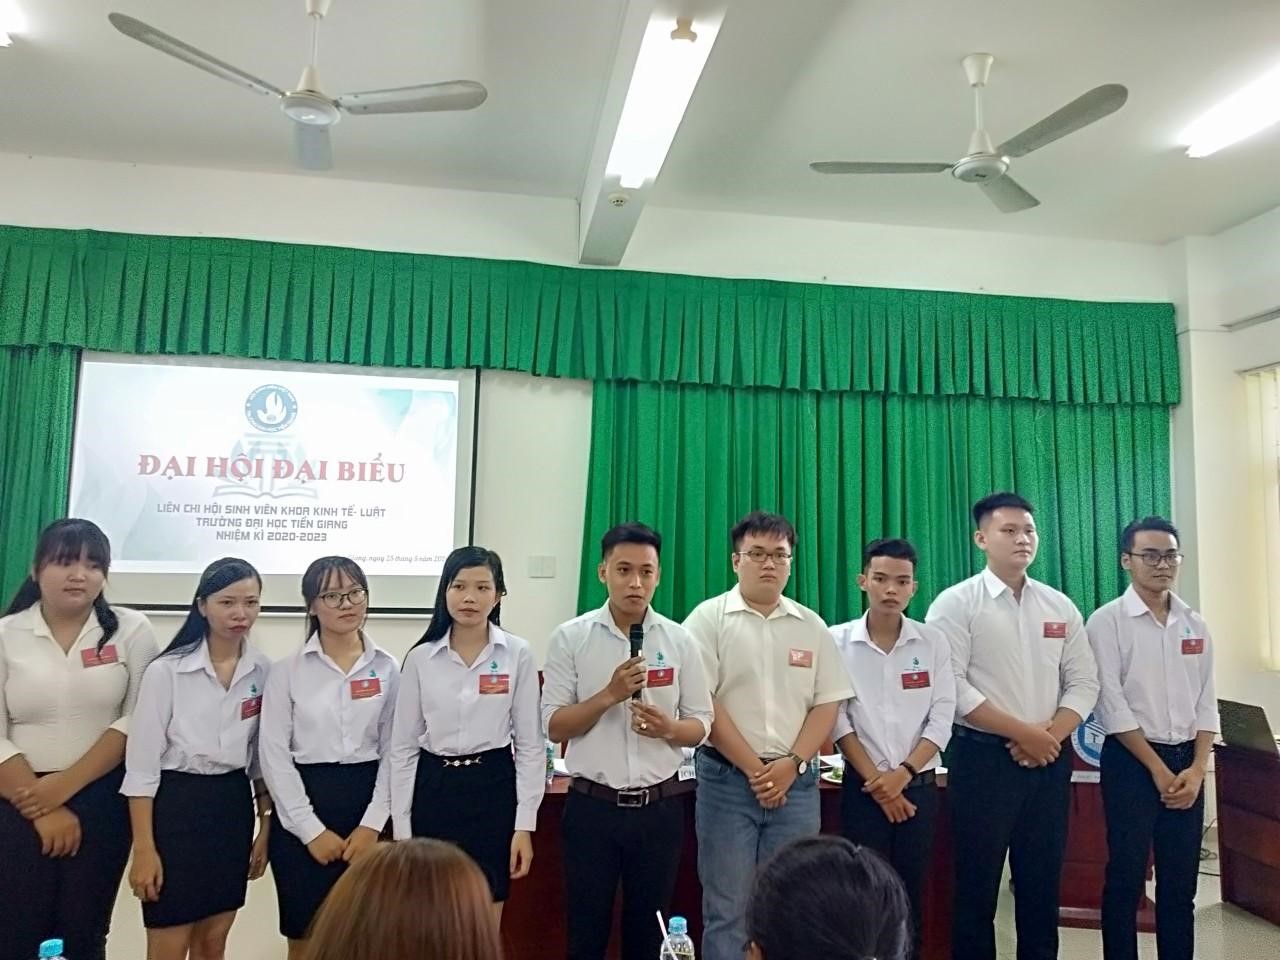 Đồng chí Lê Trung Nhân tái đắc cử chức vụ Trưởng liên chi hội sinh viên Khoa Kinh tế - Luật, Nhiệm kì 2020 - 2023